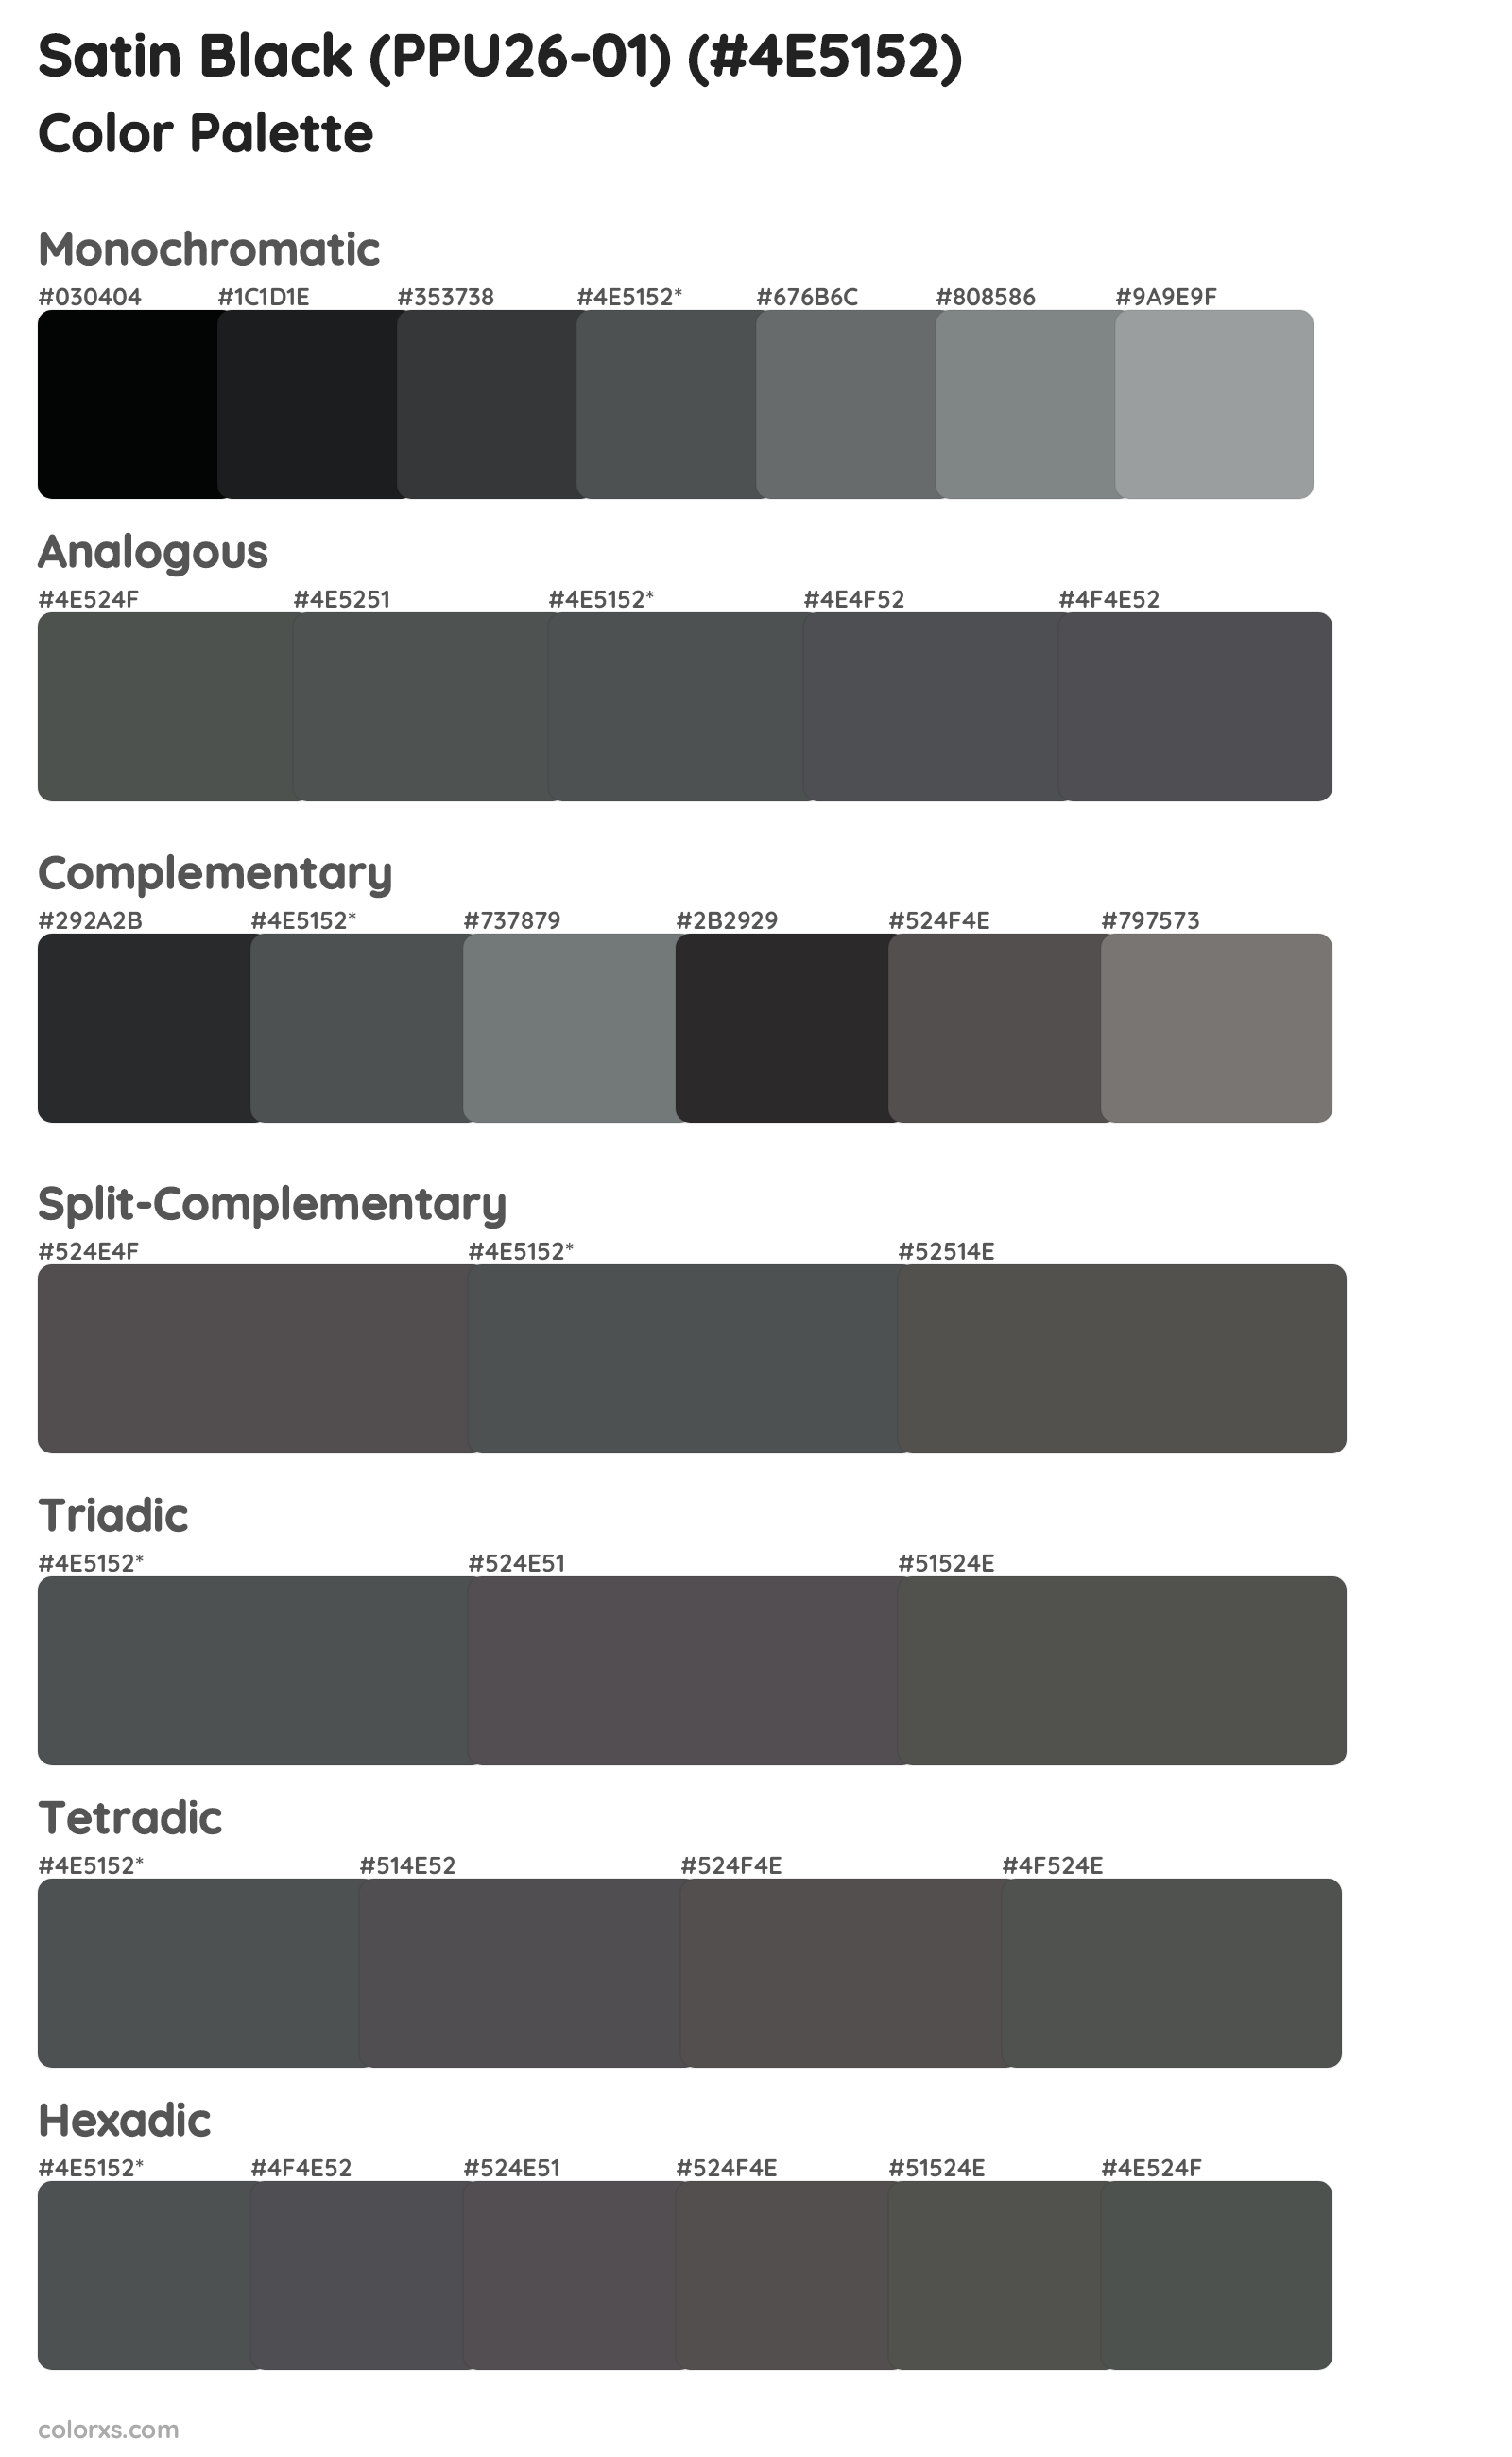 Satin Black (PPU26-01) Color Scheme Palettes